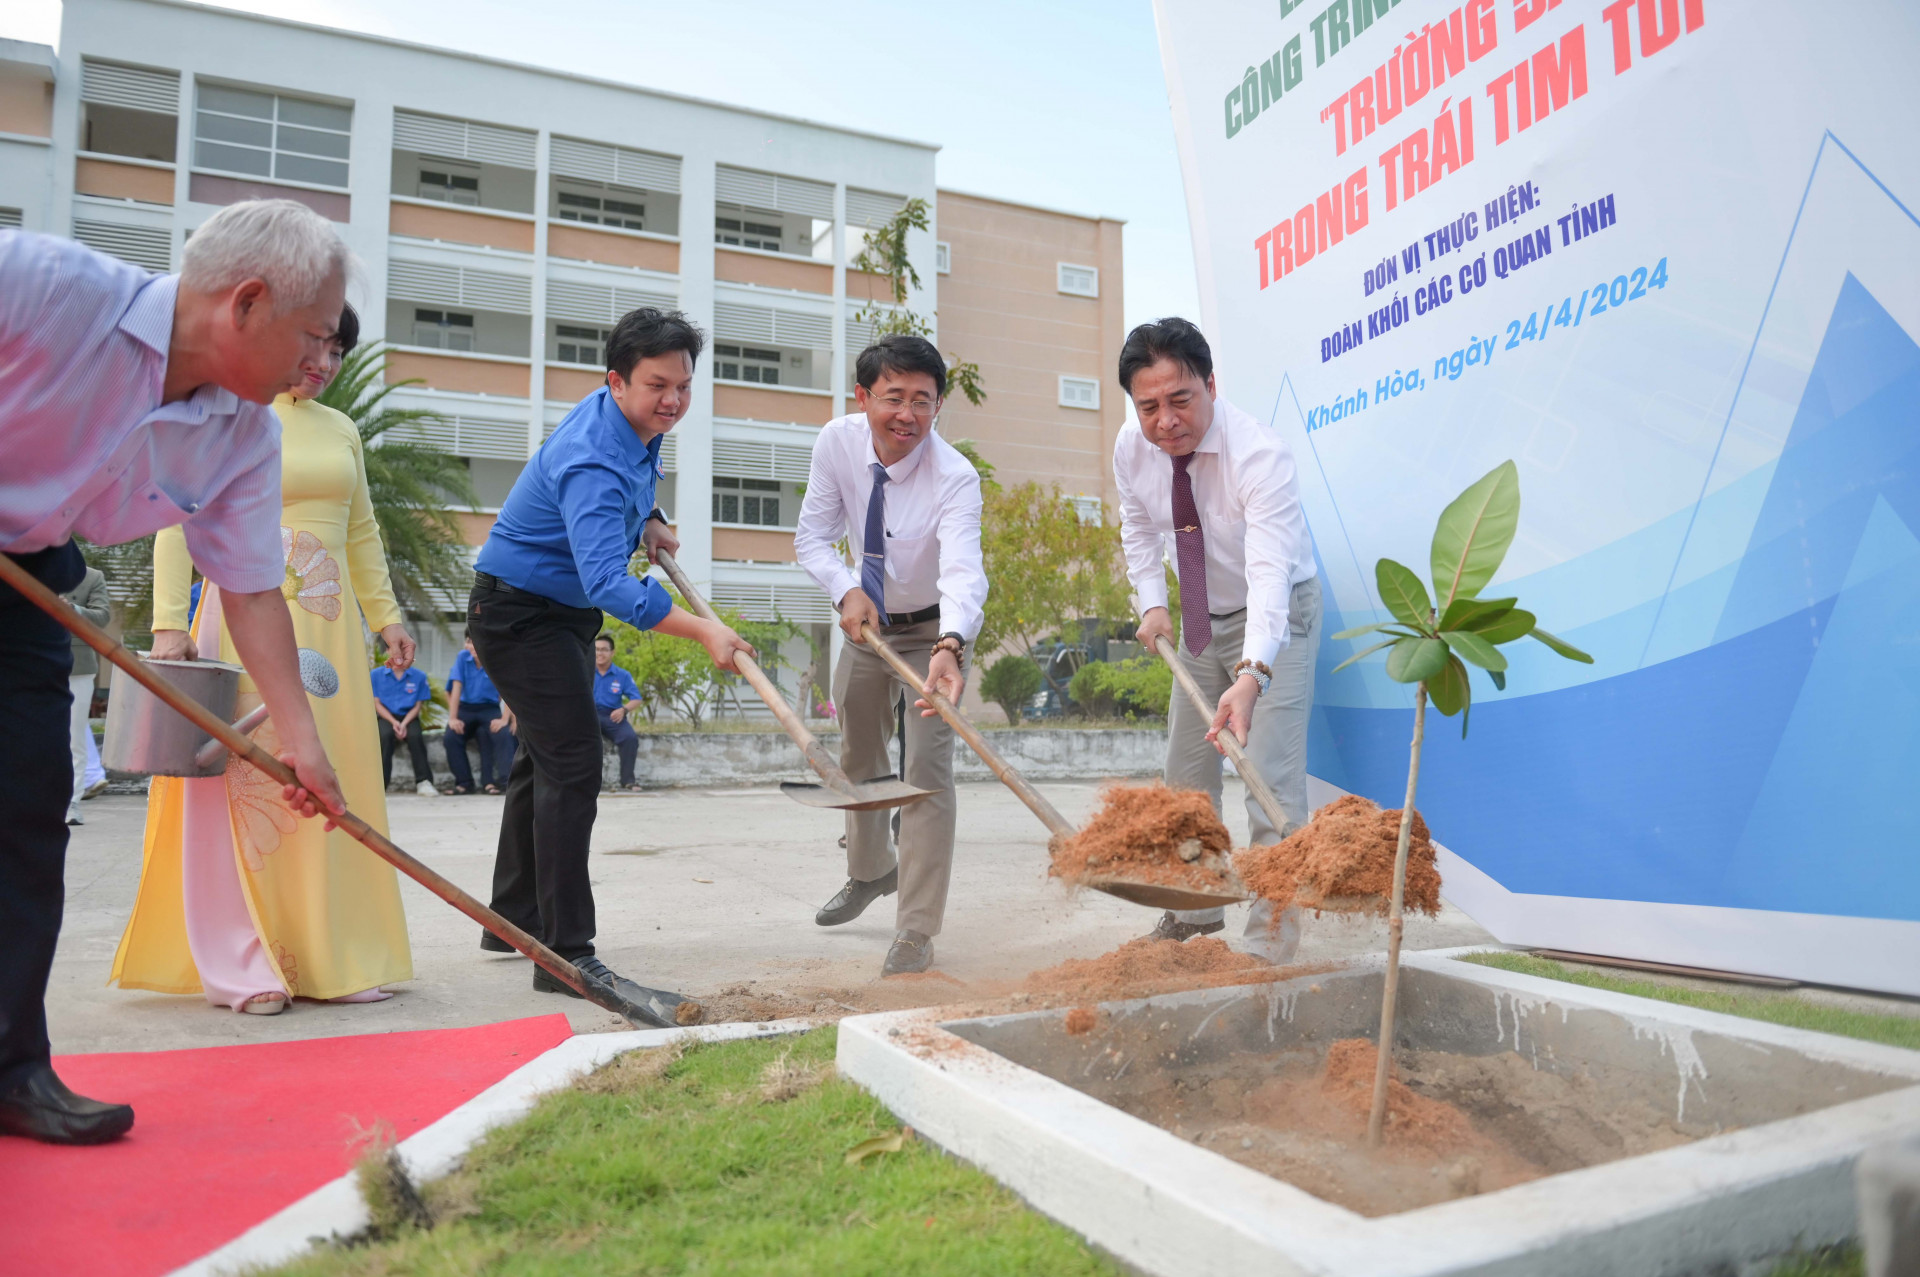 Các đại biểu trồng cây bàng vuông tại khu vực xây dựng công trình thanh niên.